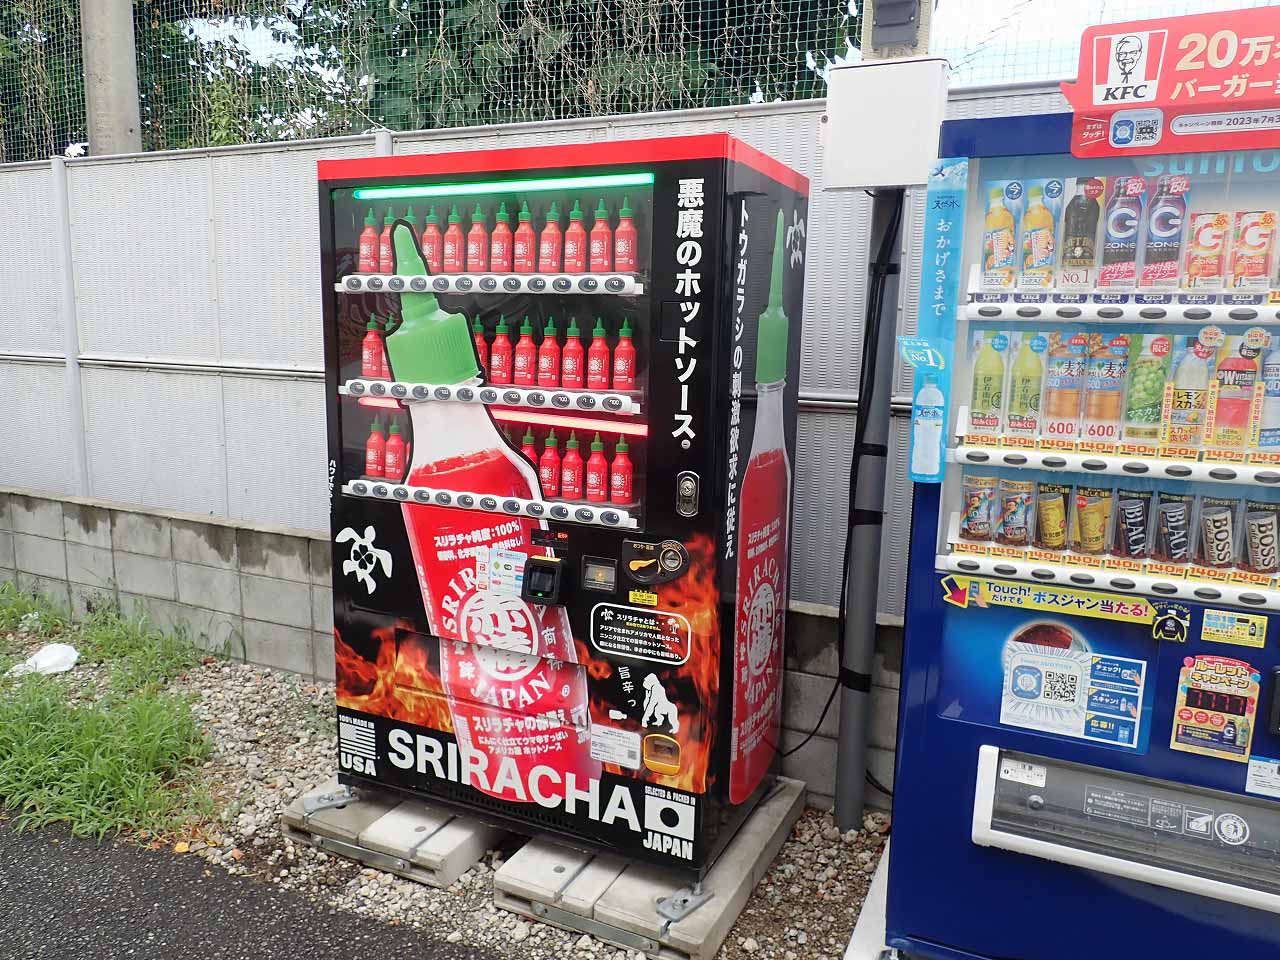 川越市駅の近くの『スリラチャの赤備え』の自動販売機